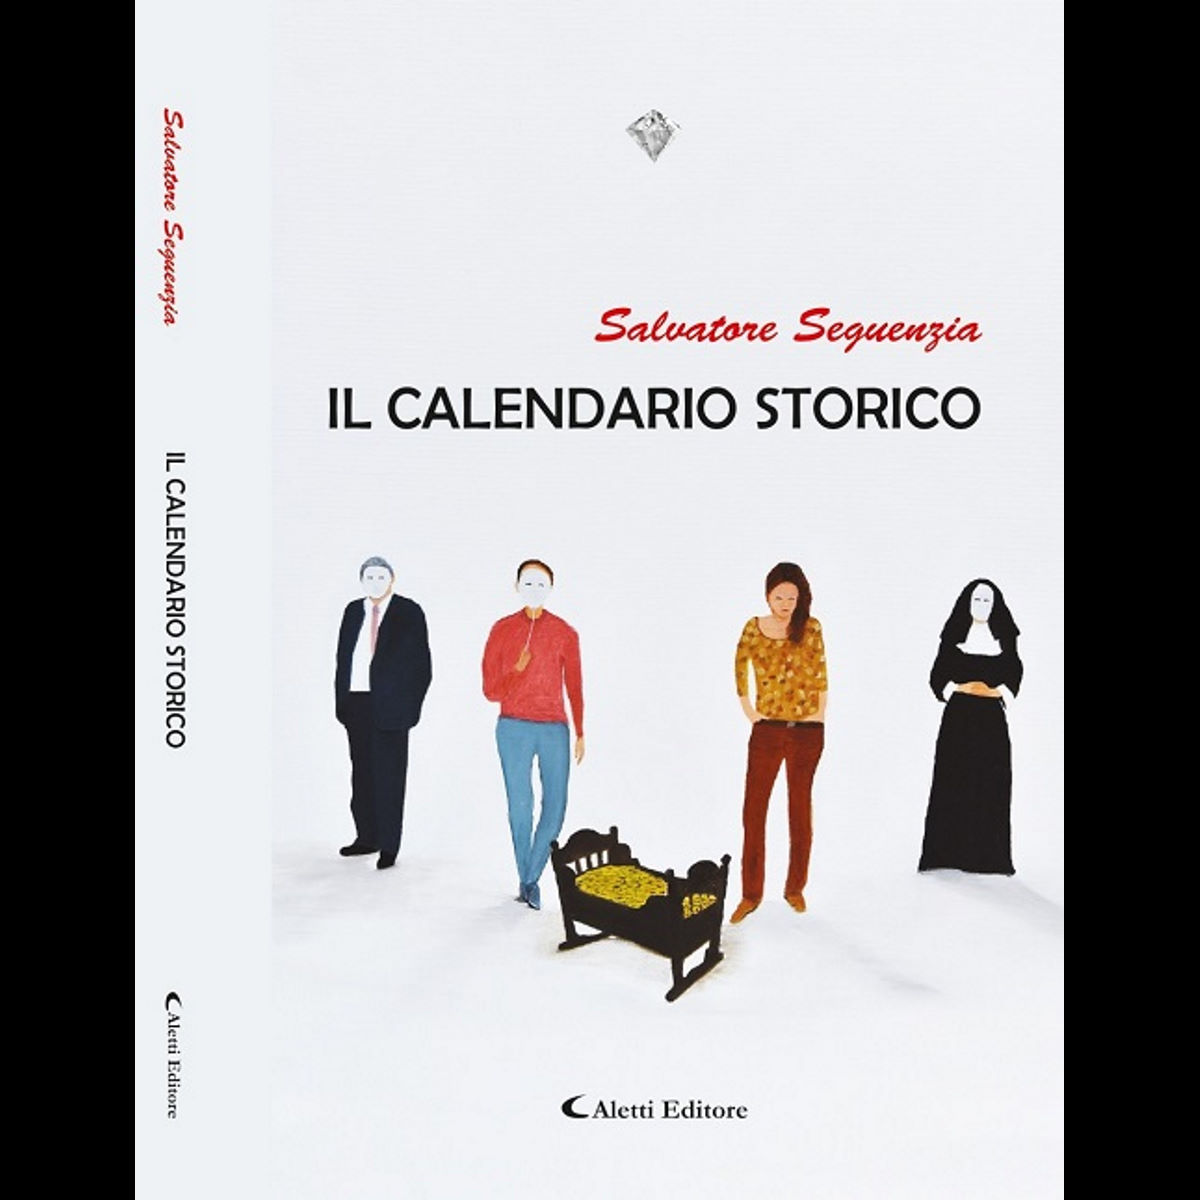 “Il Calendario Storico”. La Sicilia raccontata con fantasia maccheronica